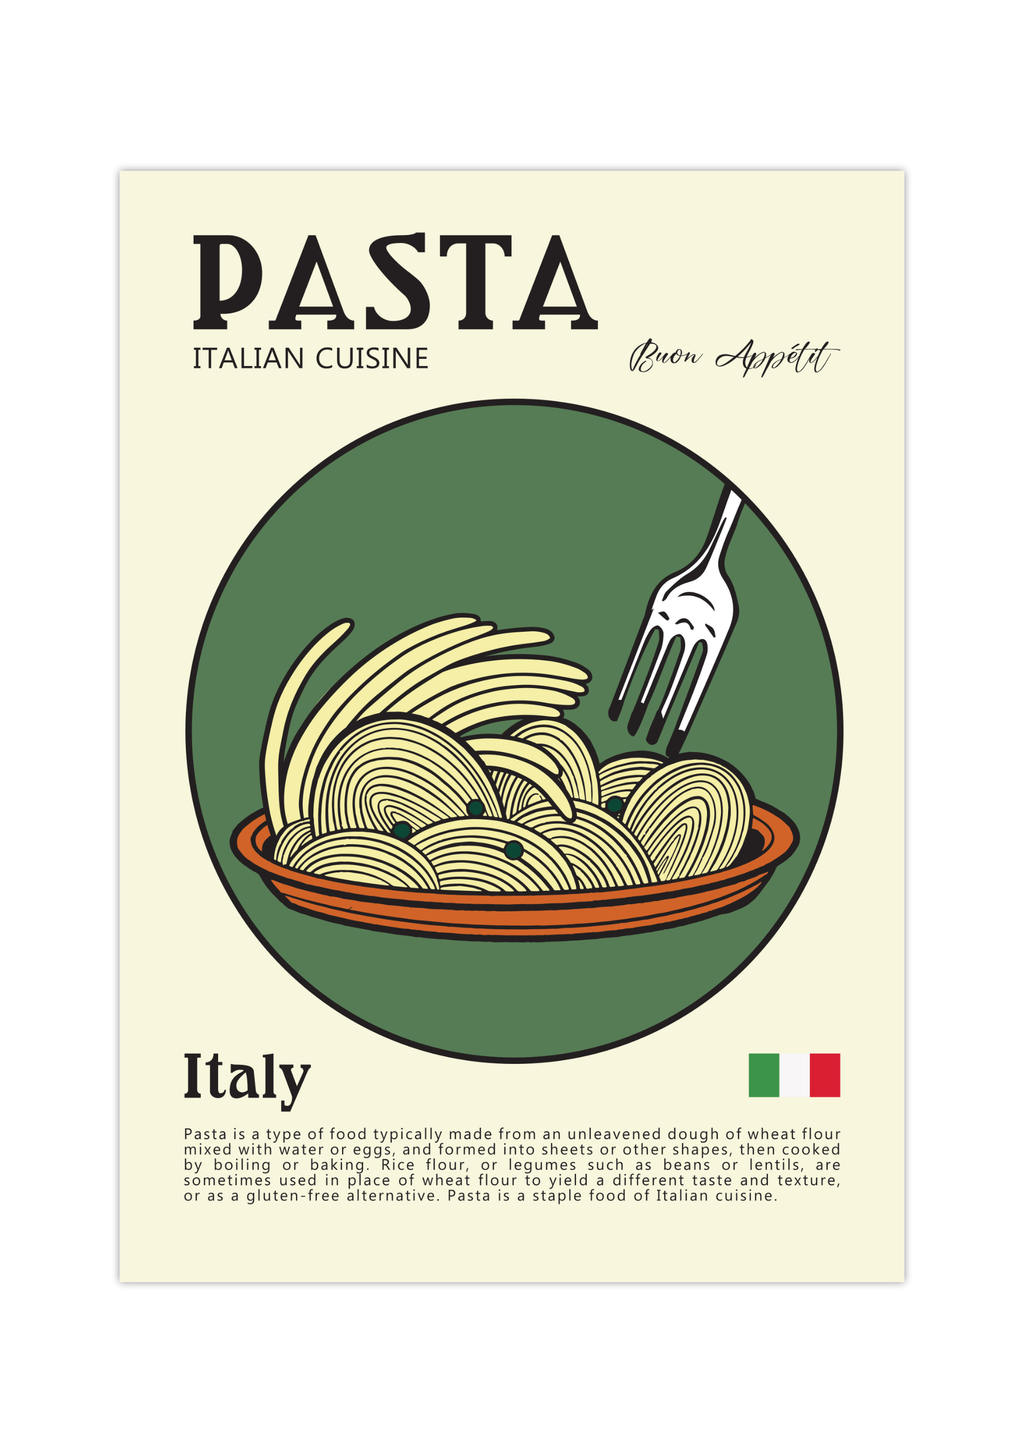 Dieses zeitgenössische Poster zeigt italienische Pasta Nudeln, mit der italienischen Flagge und eine kurze Erläuterung der Geschichte der Pasta. 